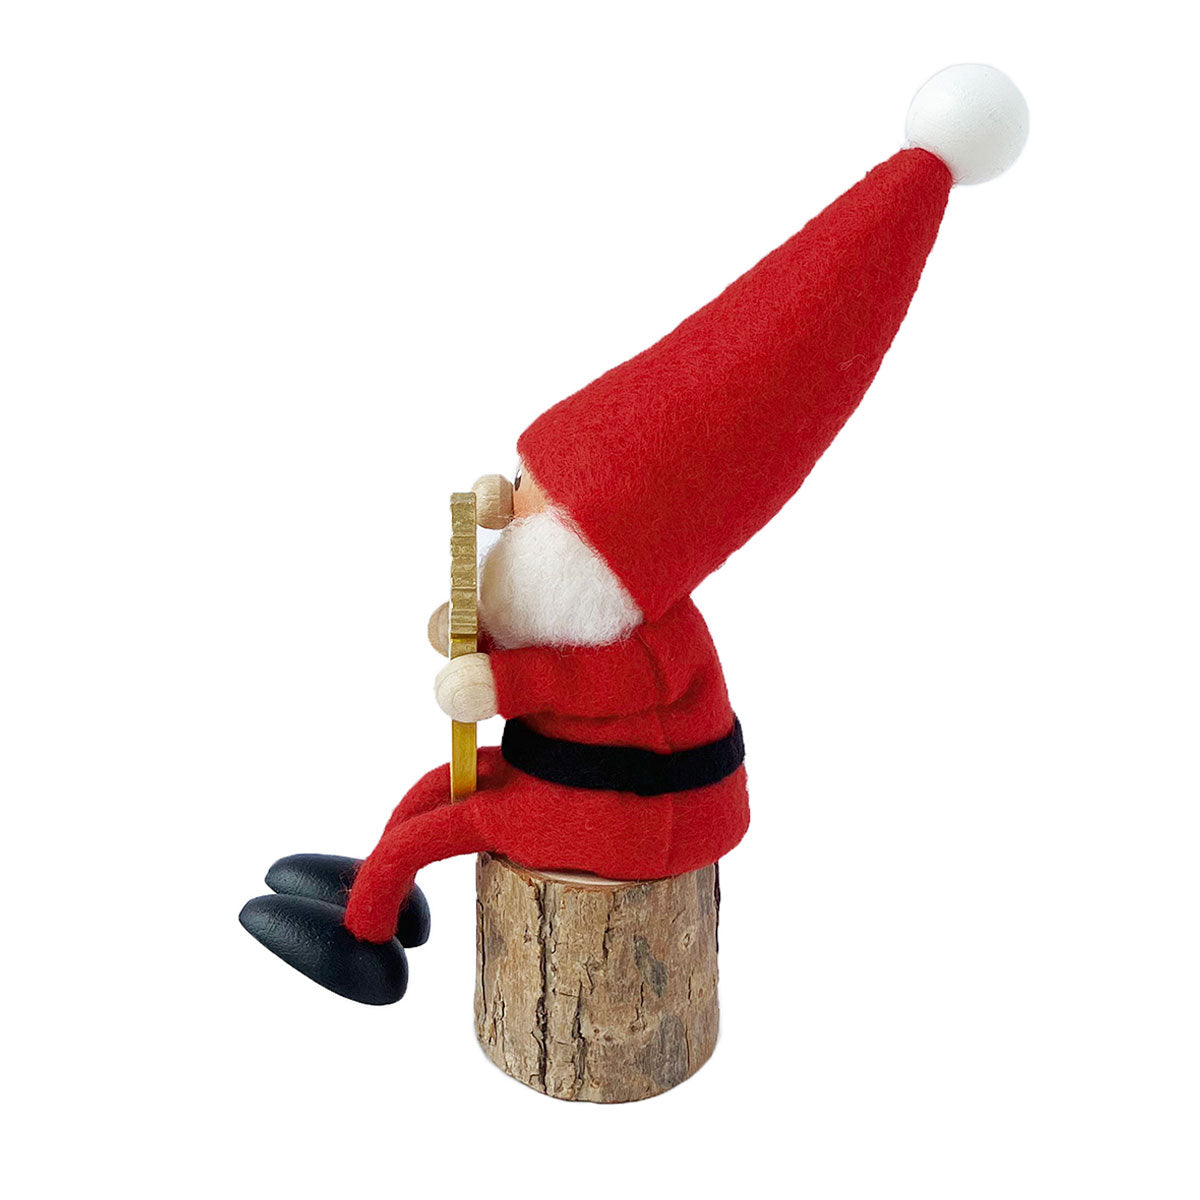 【2023新作】NORDIKA nisse ノルディカ ニッセ クリスマス 木製人形 ( タツノオトシゴを抱えたサンタ )